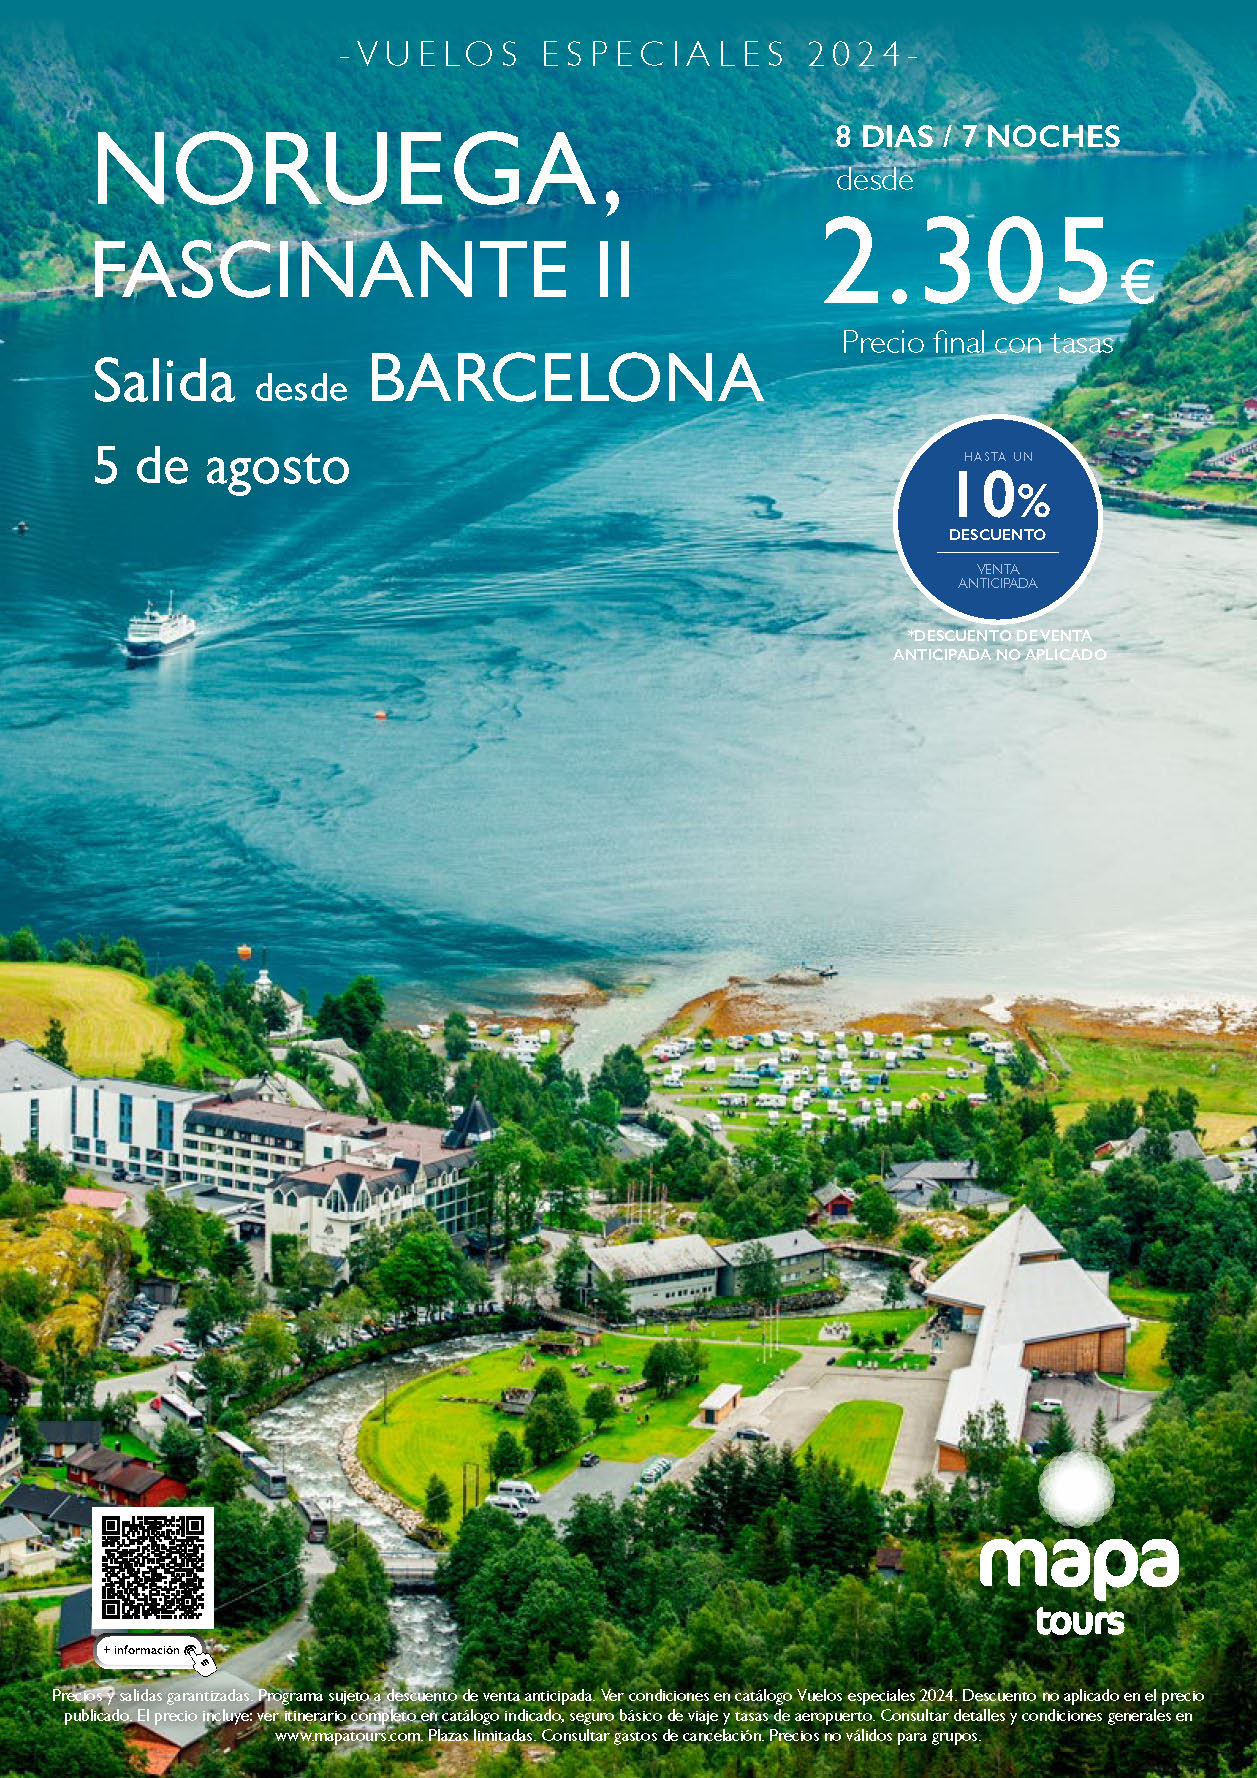 Oferta Mapa Tours circuito Noruega 8 dias salida 5 Agosto 2024 vuelo especial directo desde Barcelona